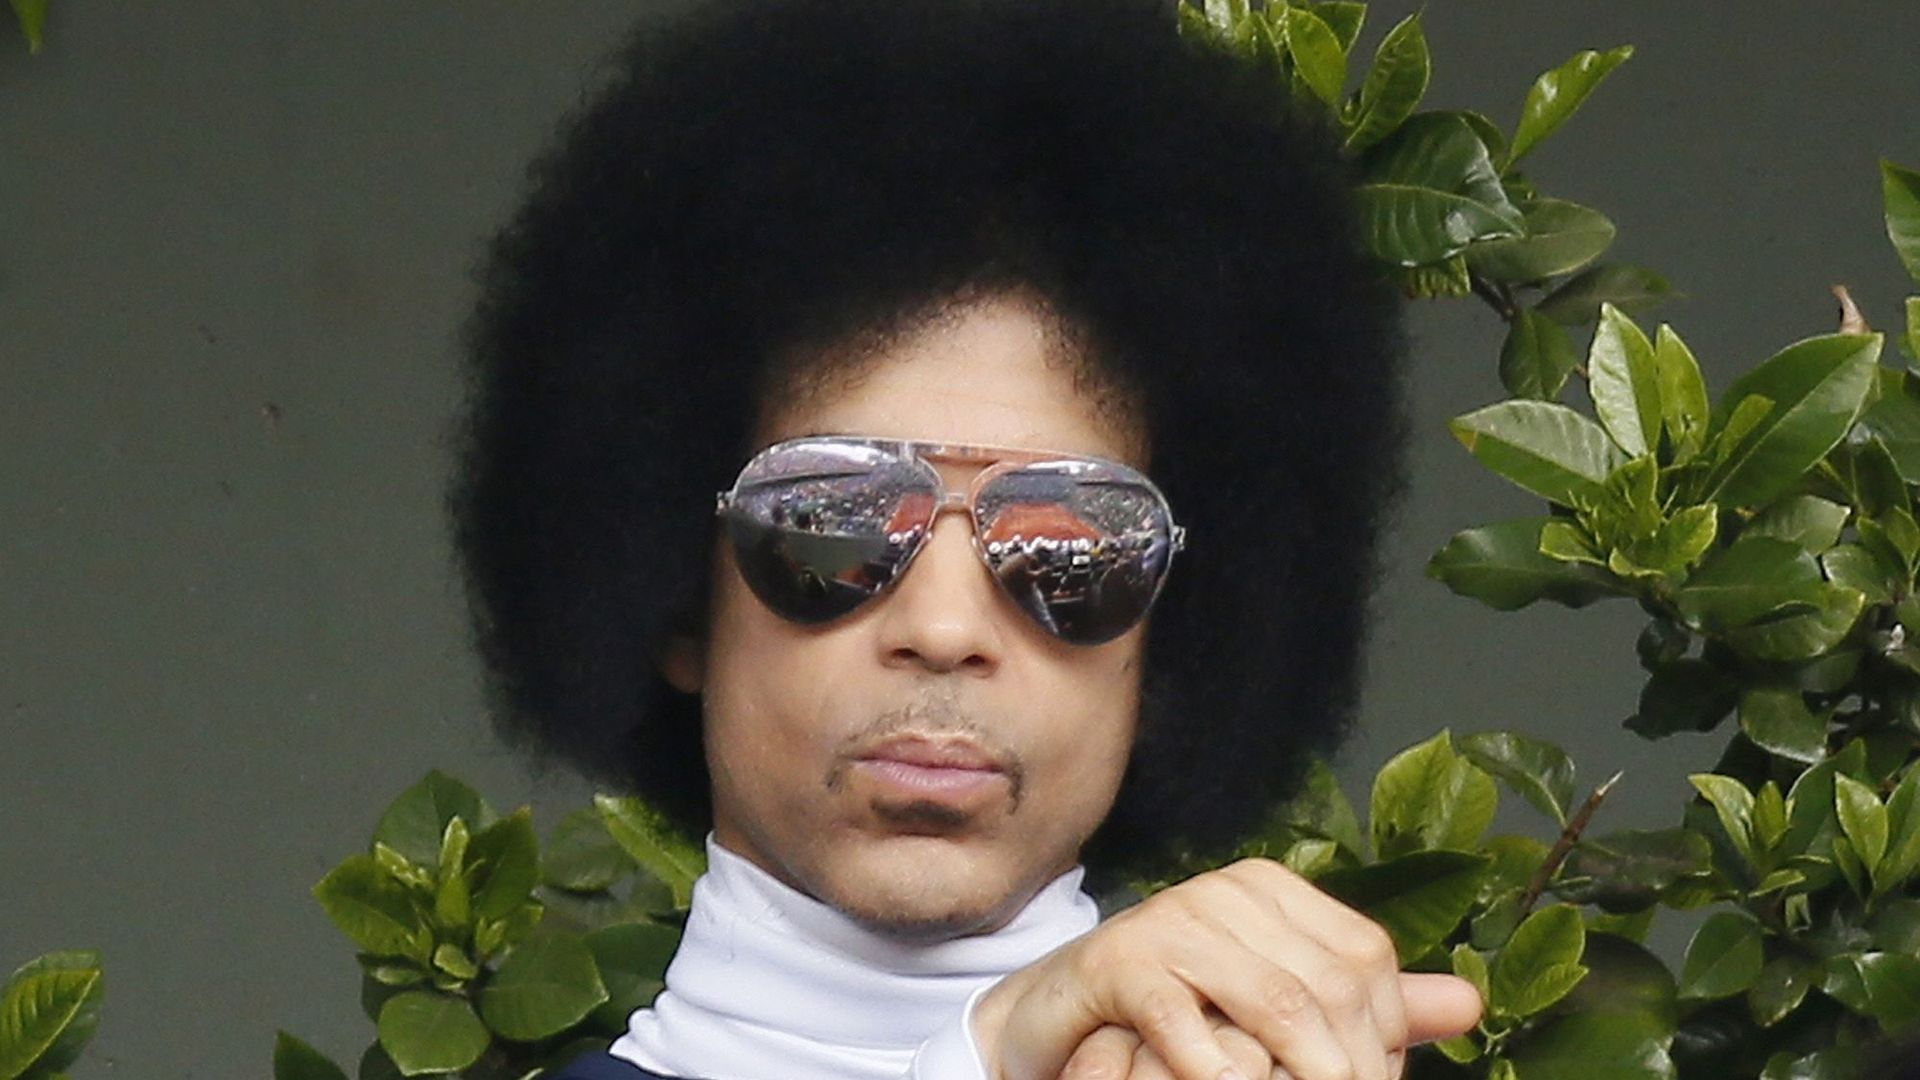 C'est le deuxième morceau tiré de "Hit&Run Album" ("Délit de fuite") que Prince révèle ce mois-ci